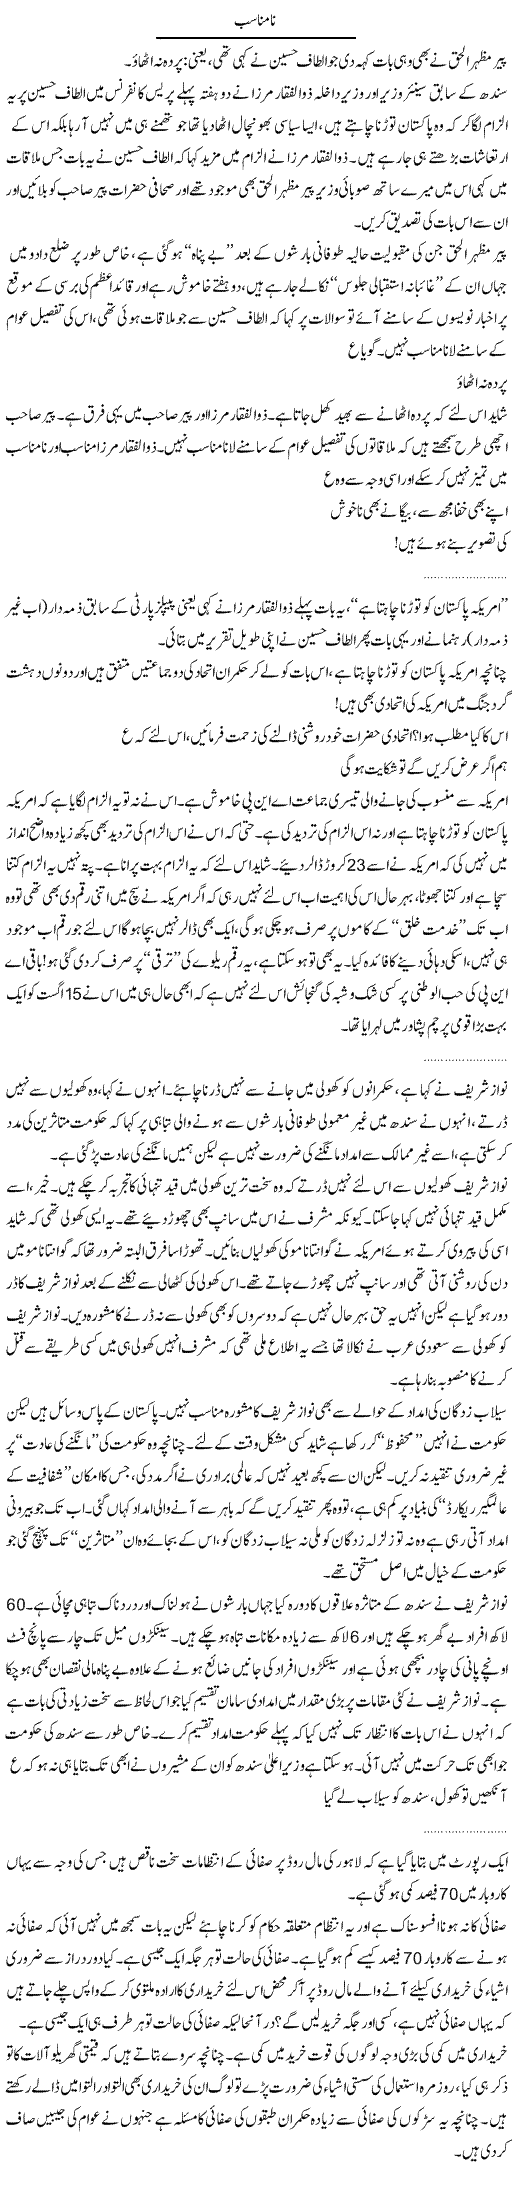 Altaf and Mirza Express Column Abdullah Tariq 13 September 2011